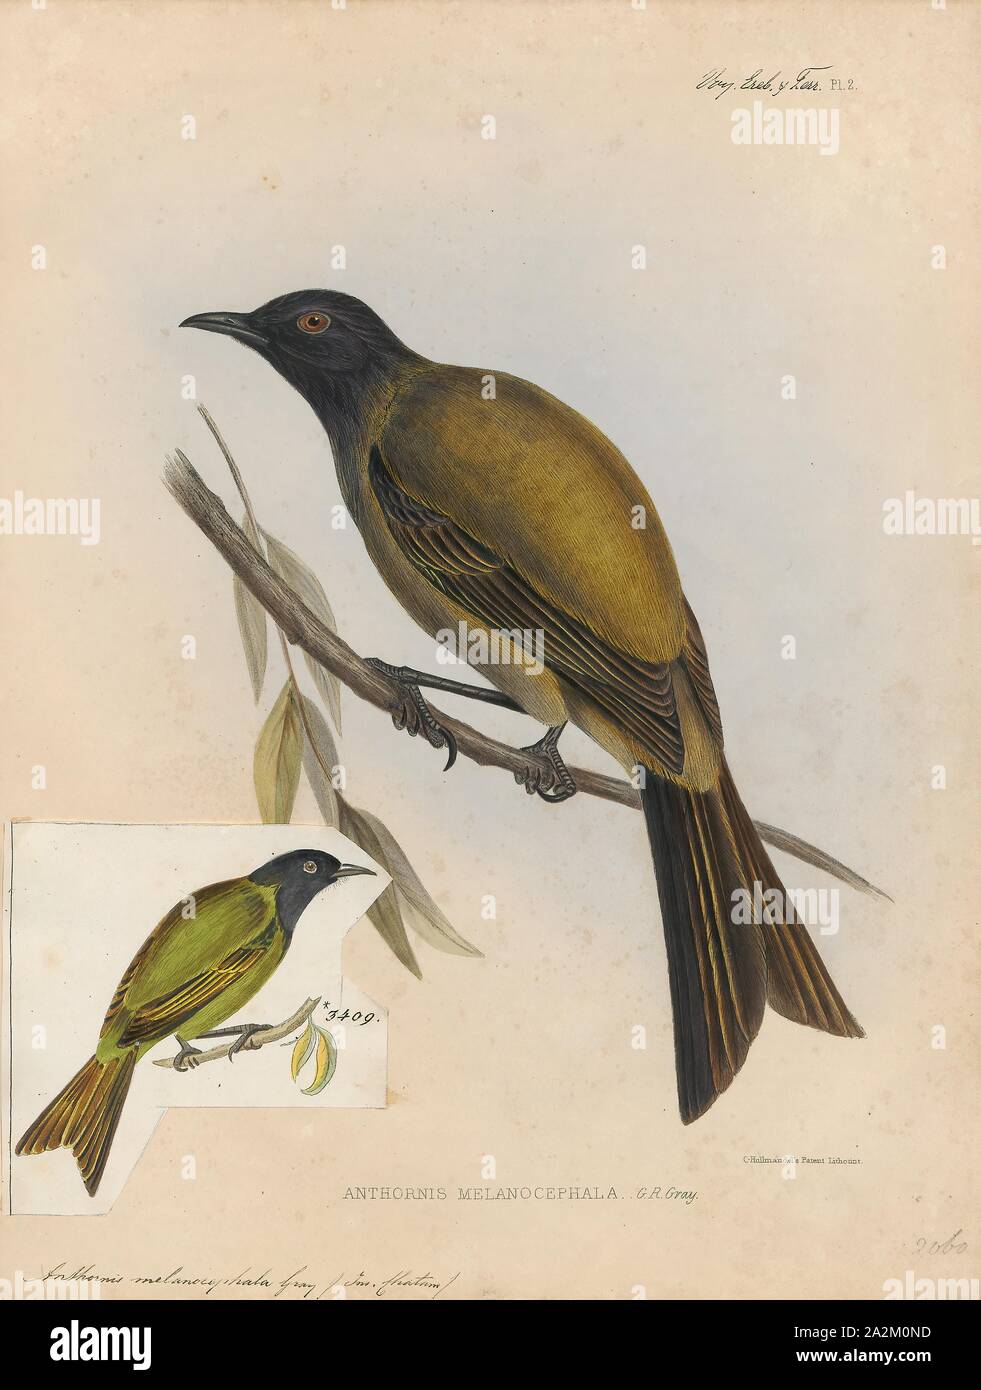 Anthornis melanocephala, Drucken, die Chatham bellbird (Anthornis Melanocephala) ist eine ausgestorbene Vogelart aus der Familie Meliphagidae. Sie war endemisch auf den Chatham Inseln., 1845-1848 Stockfoto